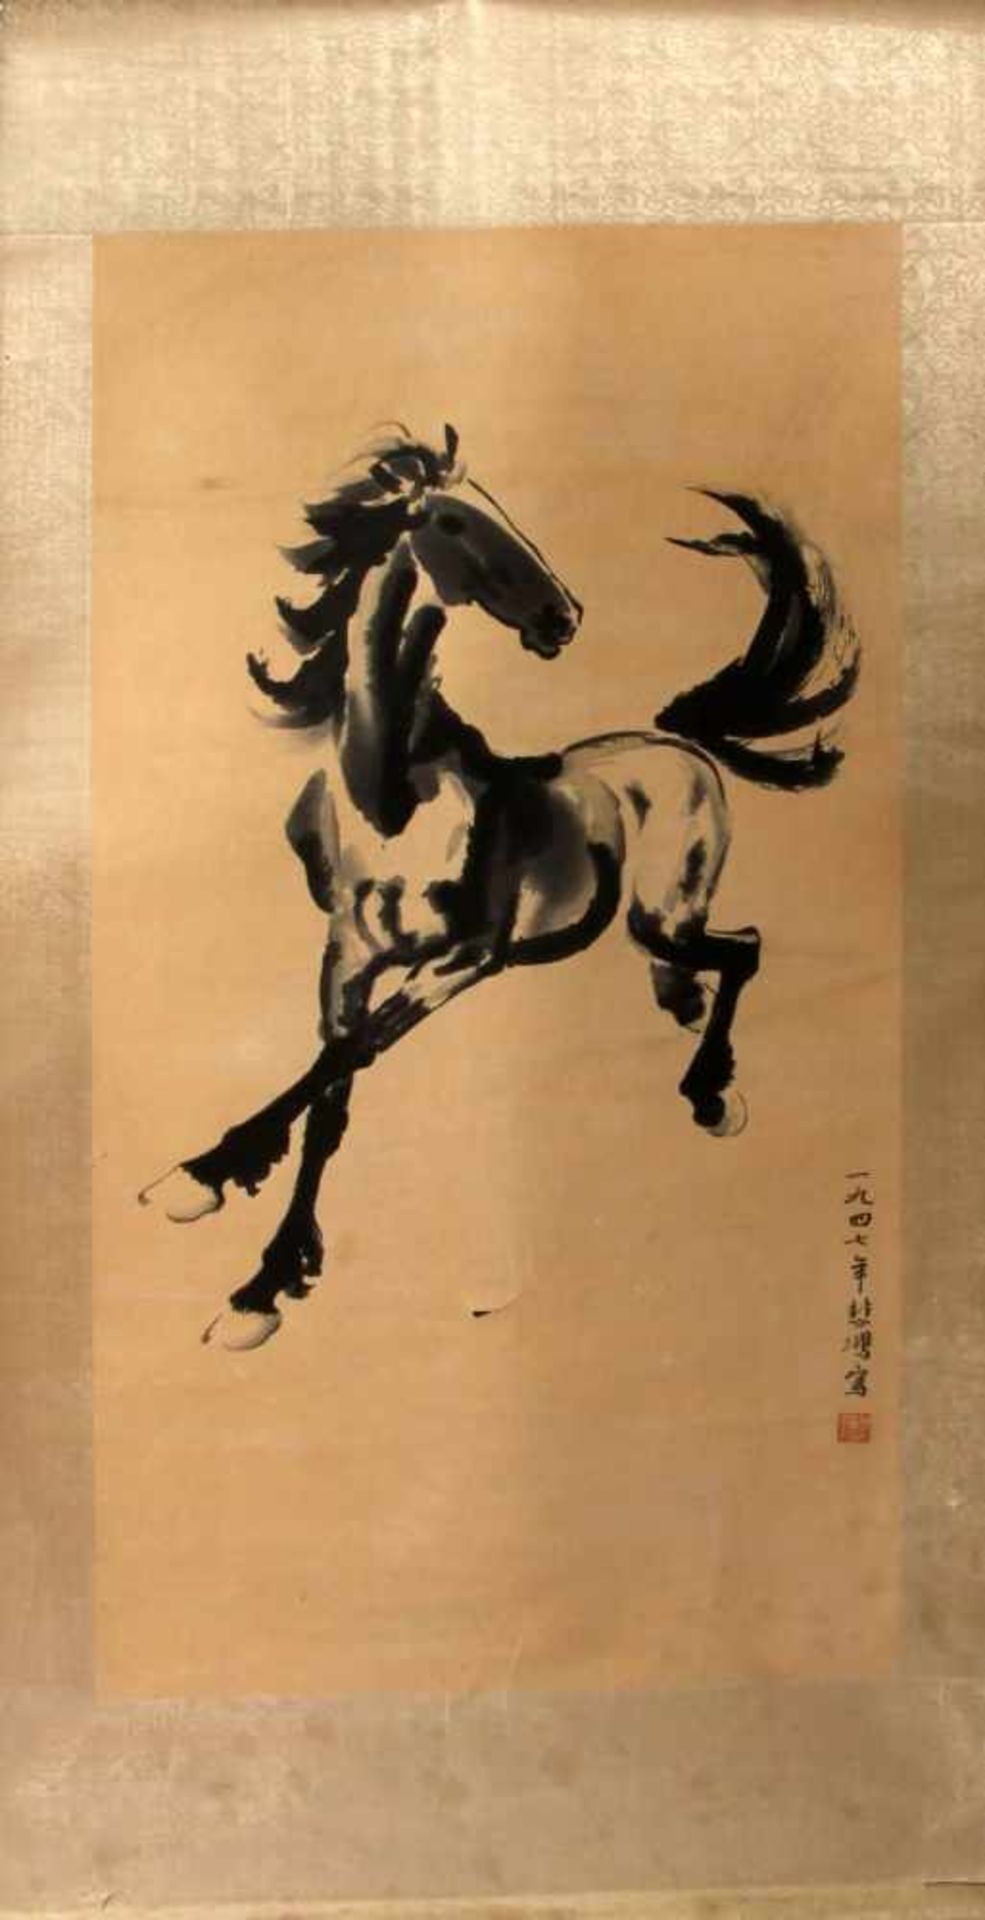 Rollbild Japan um 1900 "Trabendes Pferd". Schwarze Tusche. Rollbild auf cremefarbenem Papier.